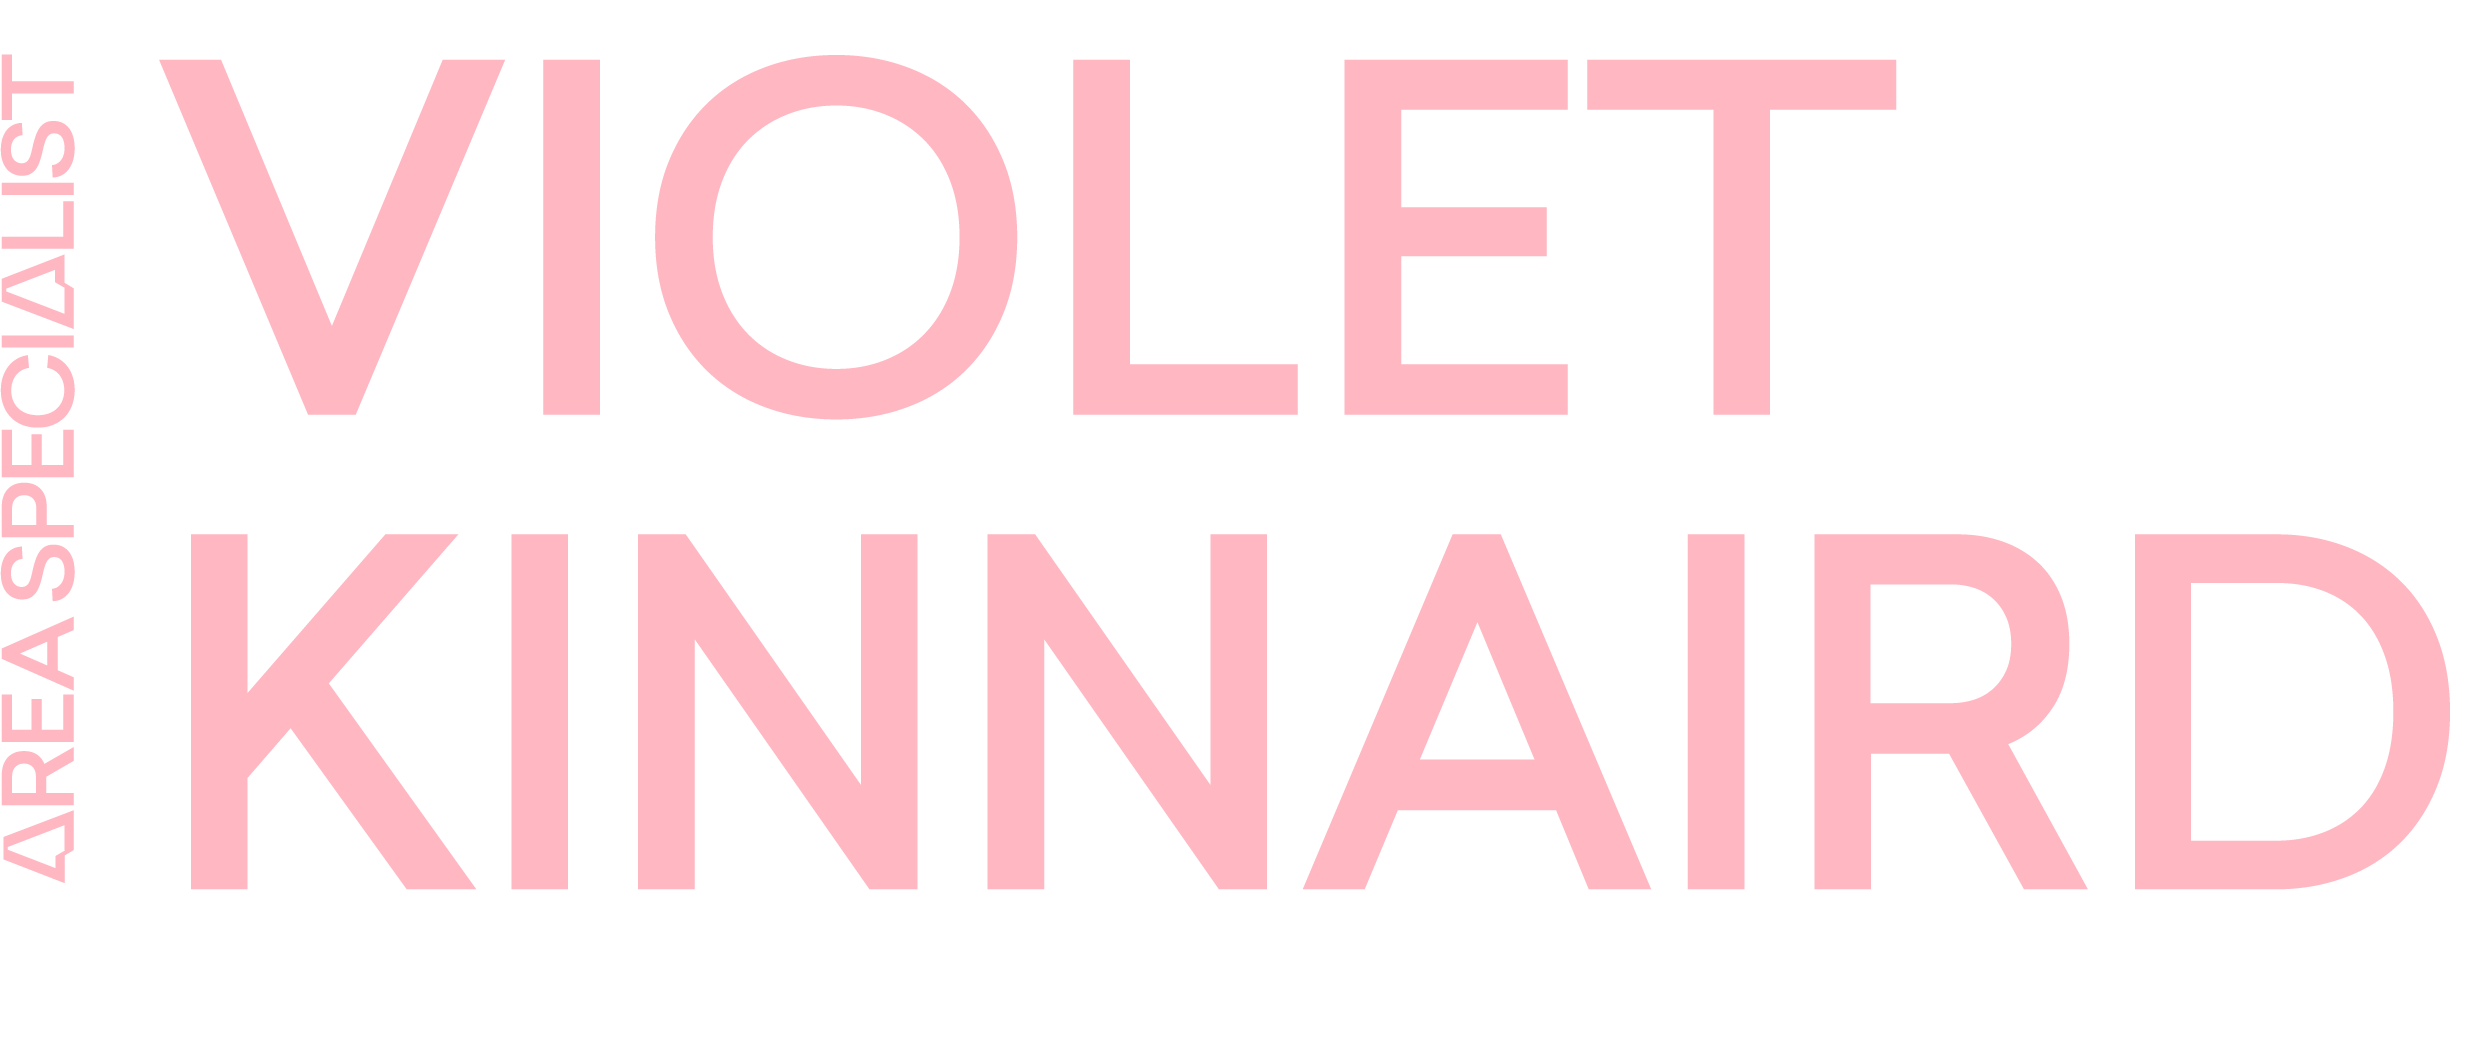 Violet's logo